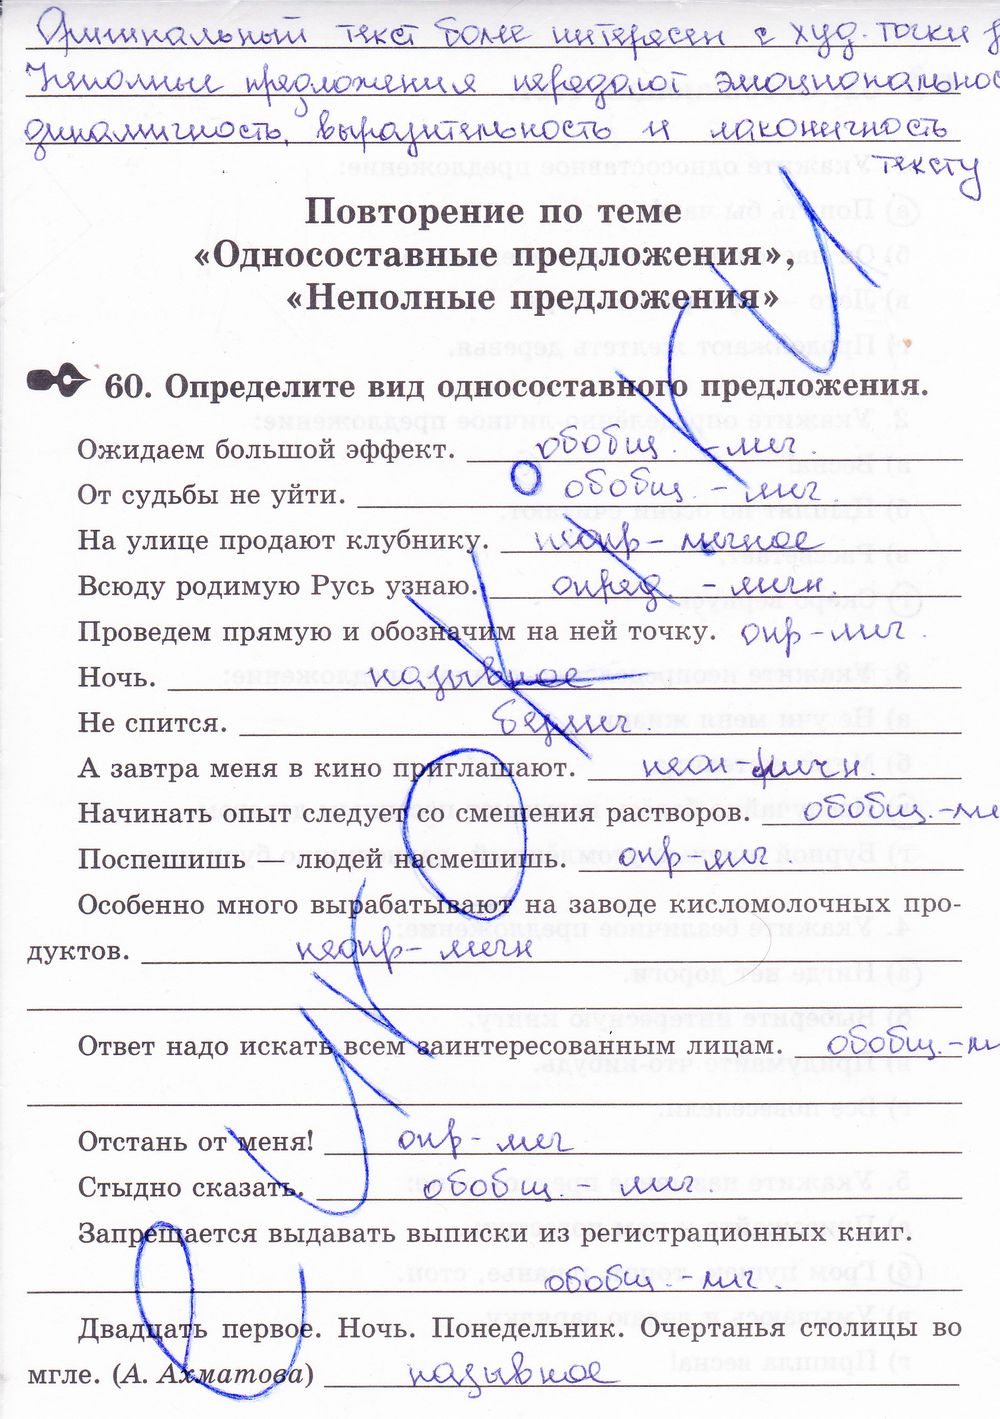 ГДЗ Русский язык 8 класс - стр. 57